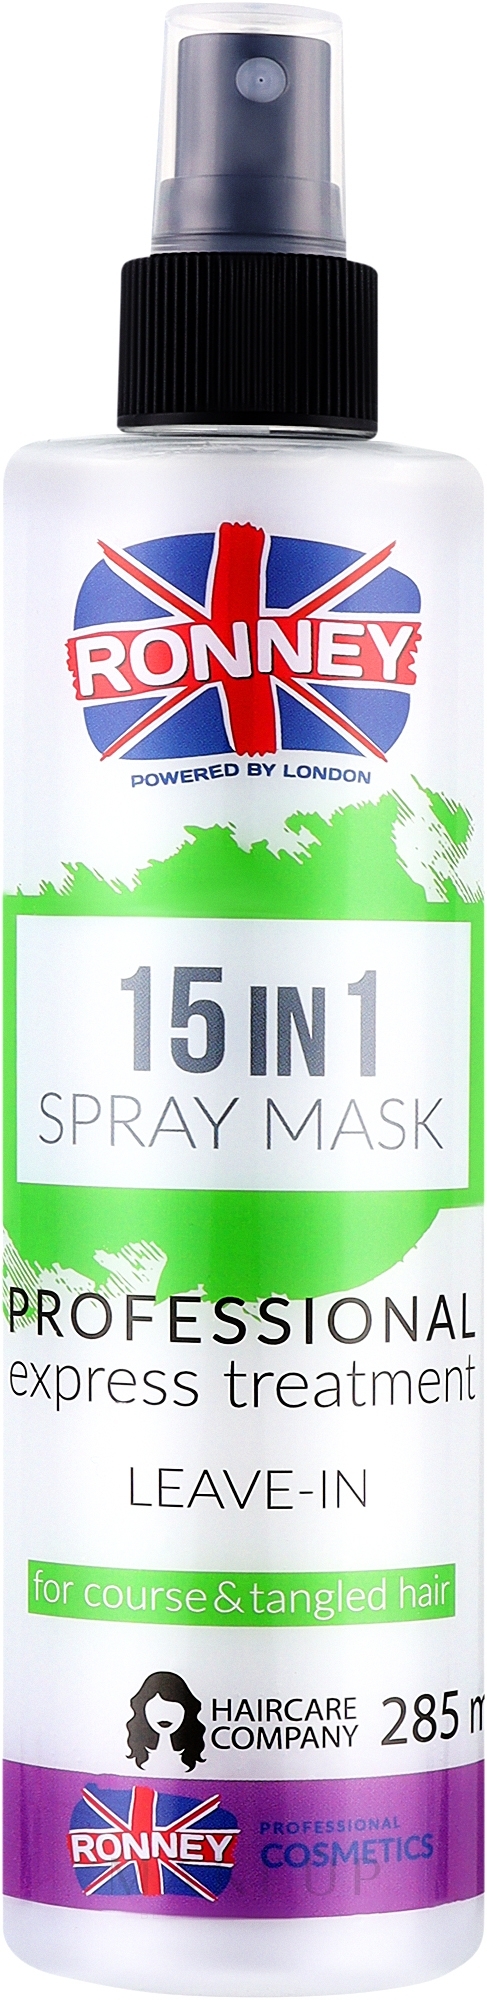 15in1 Haarspray für dickes und widerspenstiges Haar - Ronney 15in1 Spray Mask Professional Express Treatment Leave-In — Bild 285 ml